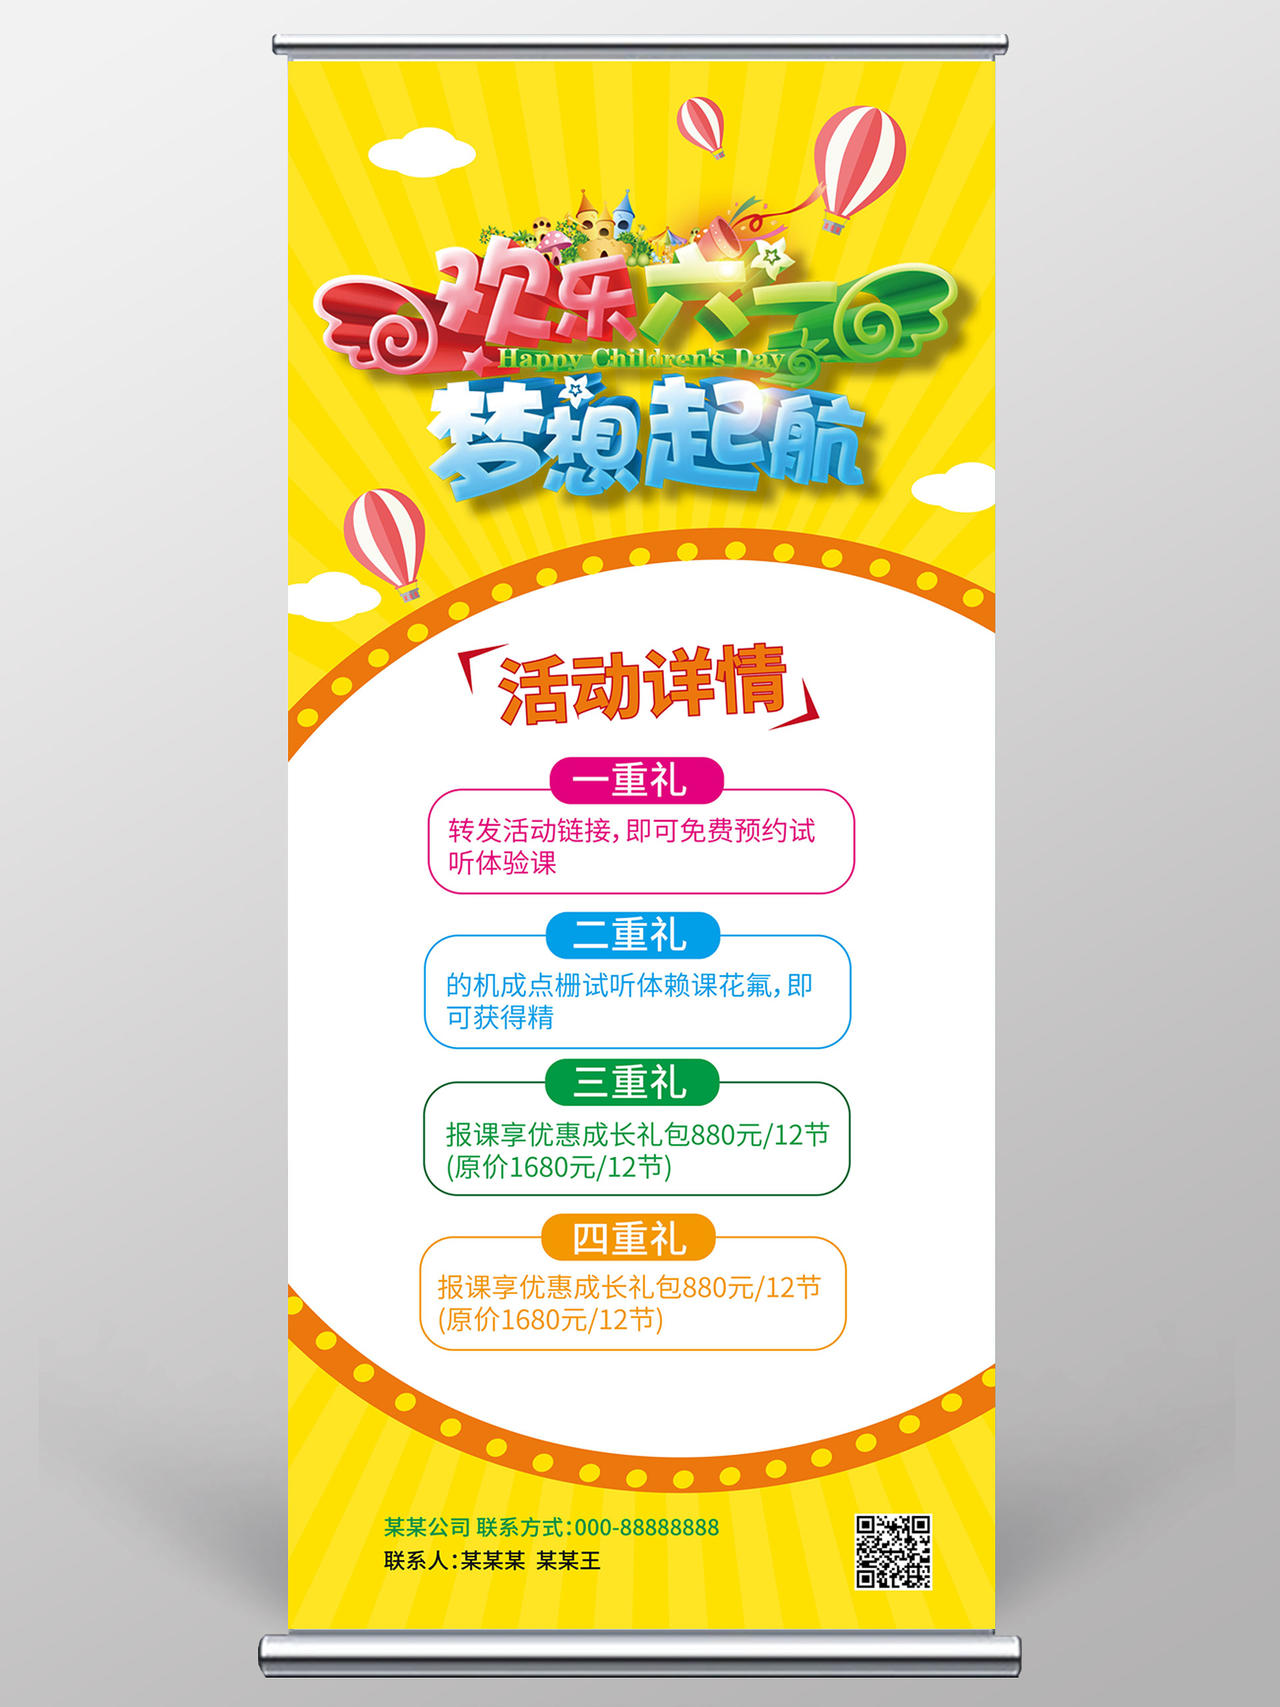 黄颜色简洁创意欢乐六一梦想起航61儿童节促销宣传易拉宝儿童节展架